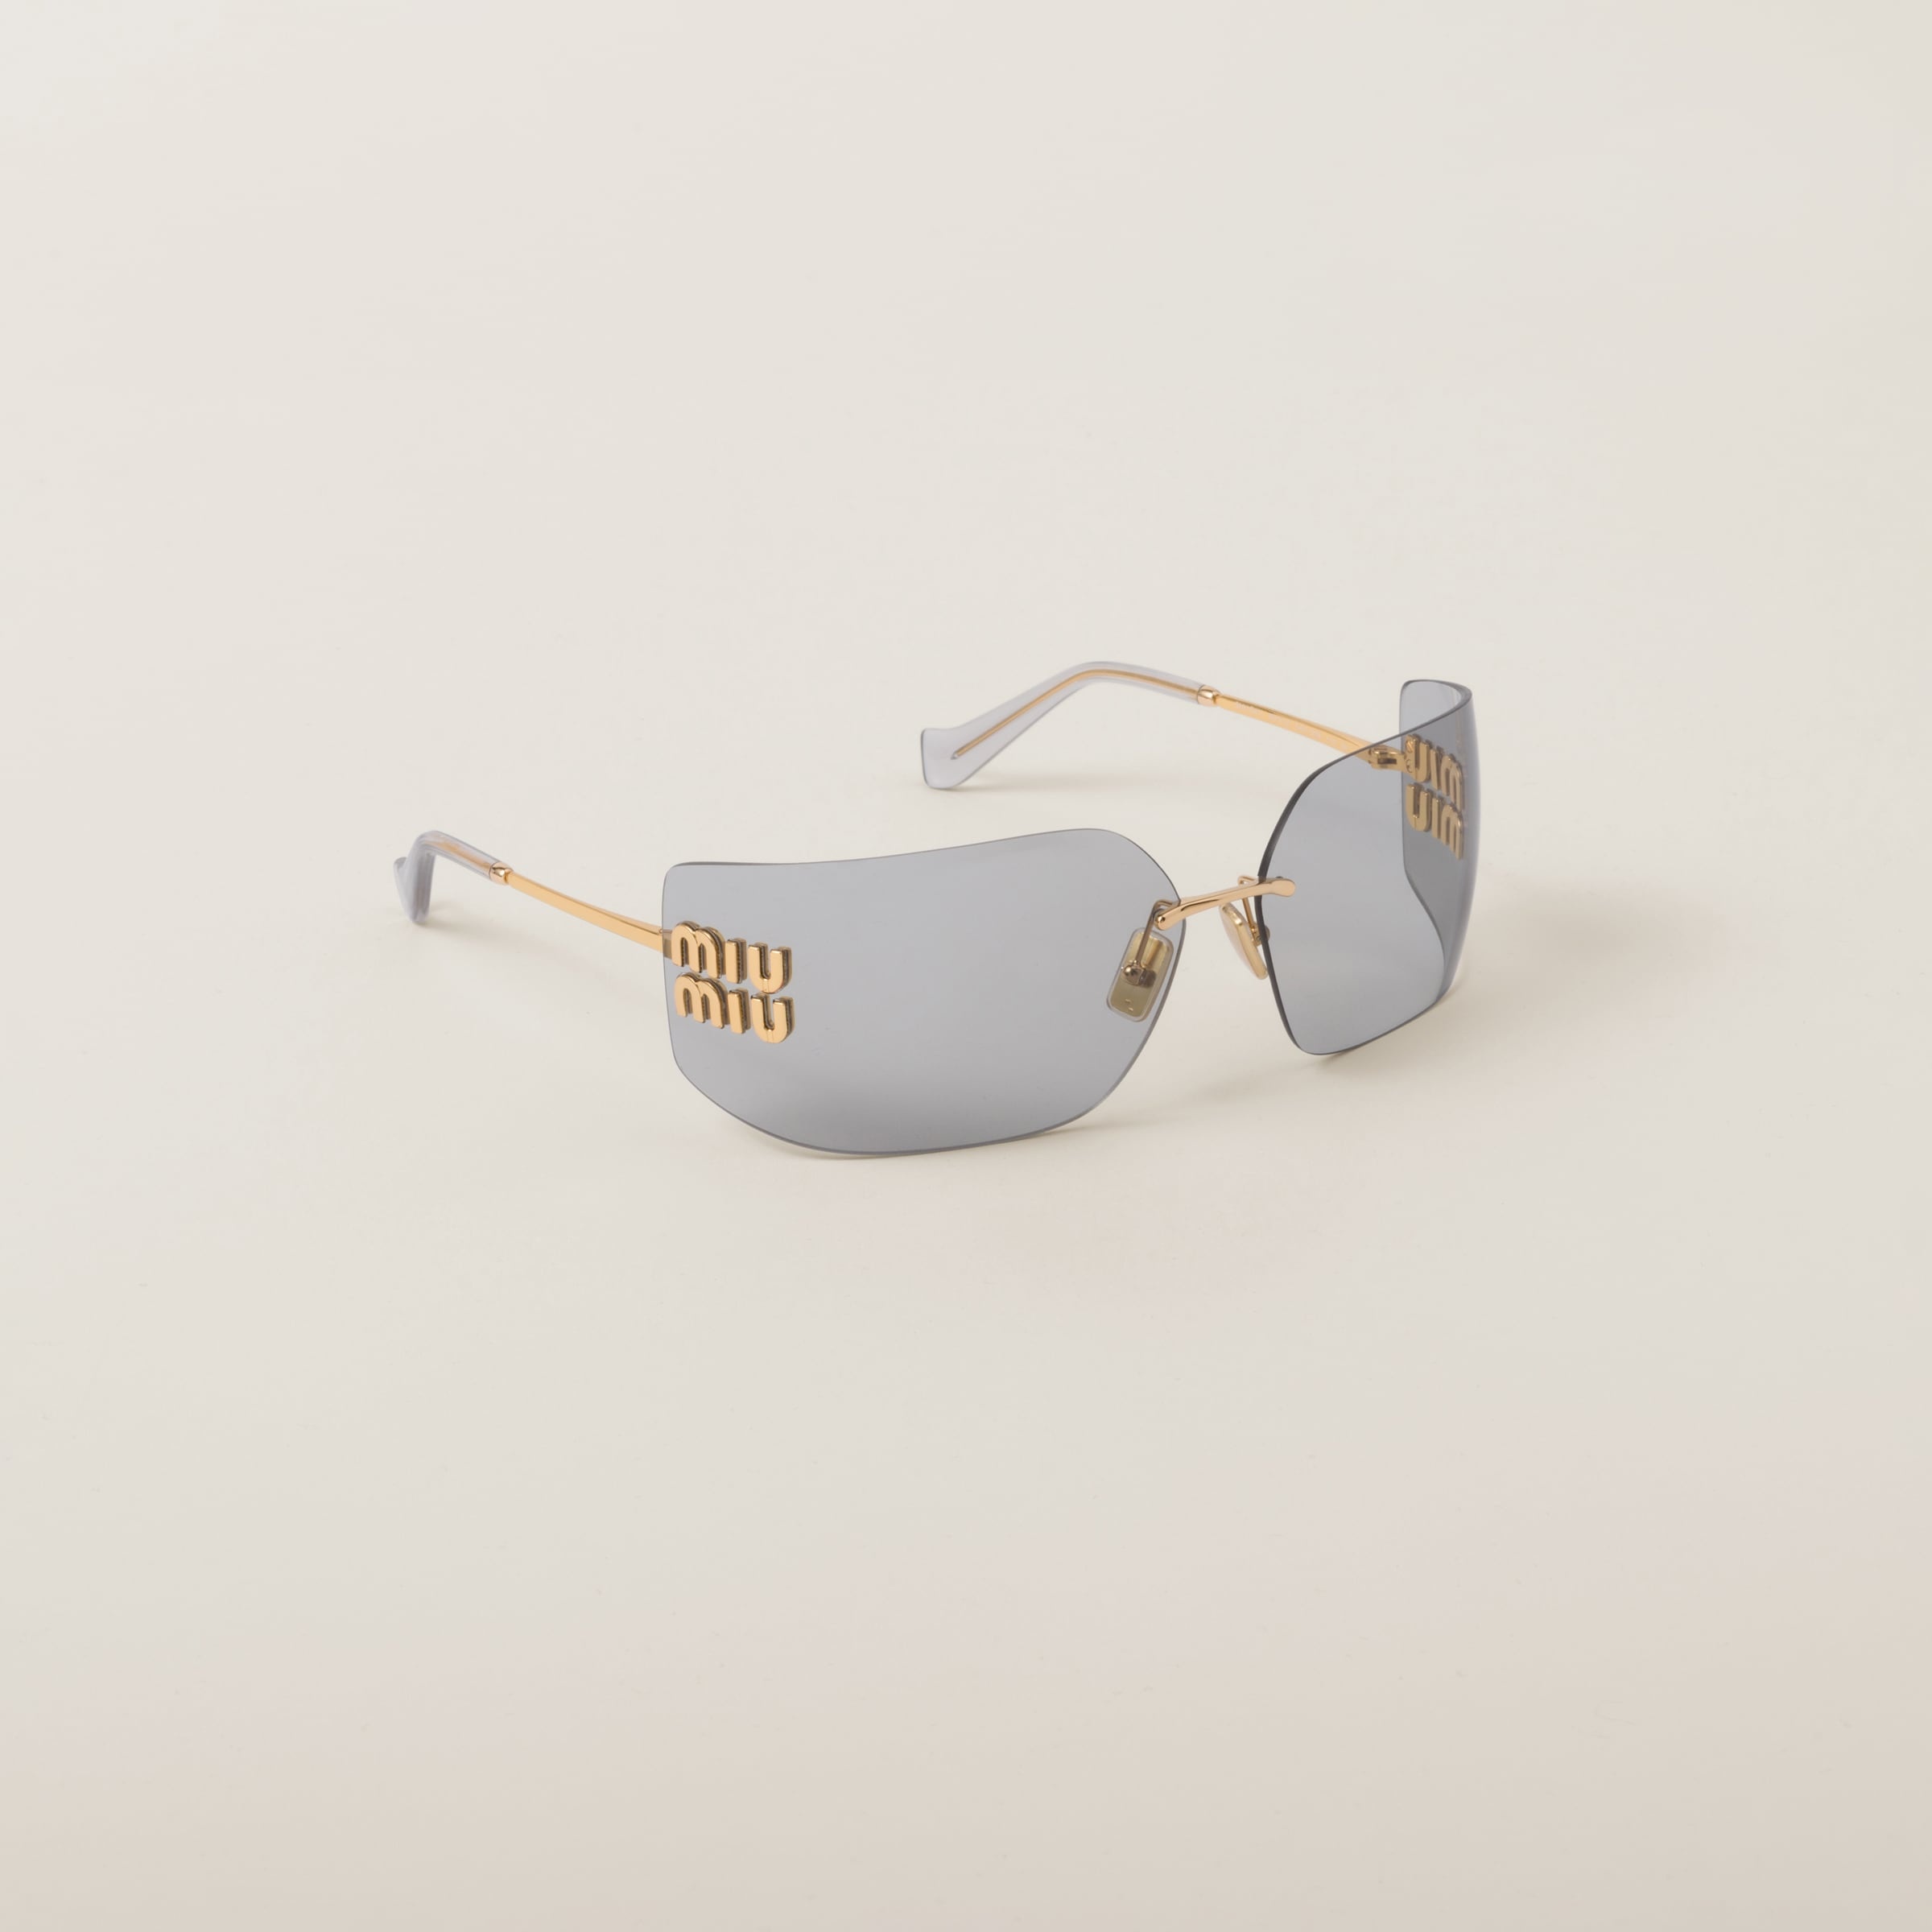 Miu Miu Runway sunglasses - 3